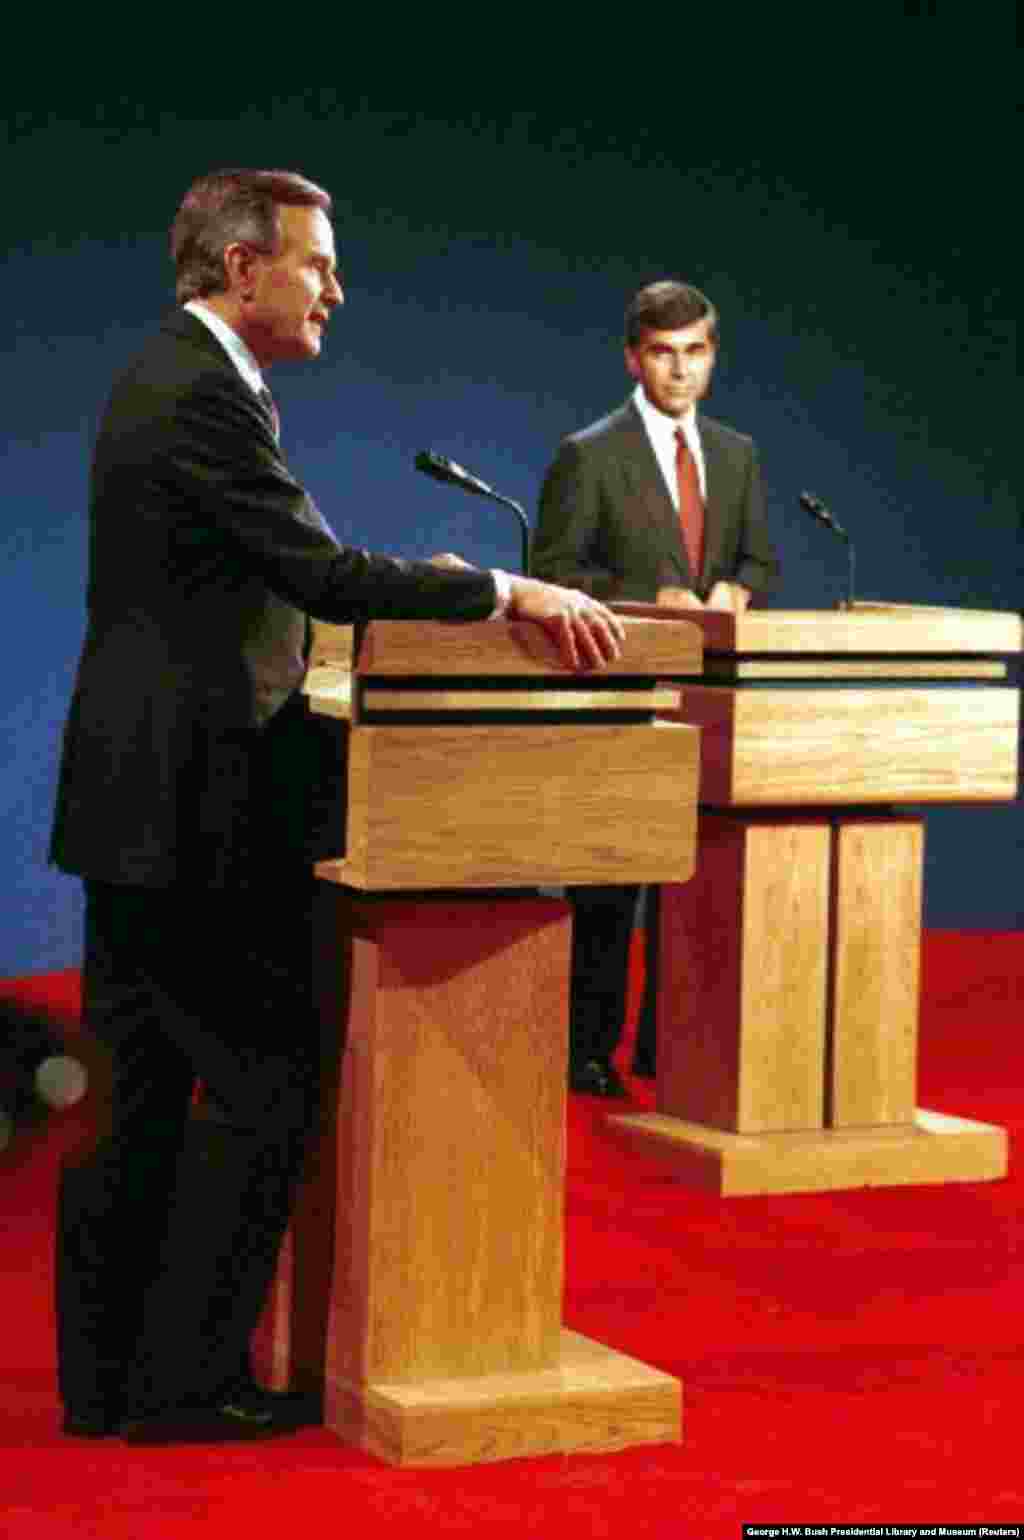 1988: Një debat kundër nënpresidentit republikan, George H. W. Bush, u hap me pyetjen ndaj demokratit Michael Dukakis nëse ai do të përkrahte dënimin me vdekje për dikë që kishte përdhunuar dhe vrarë bashkëshorten e tij. Pyetja i ofroi kandidatit, të cilin kritikët e quanin &ldquo;i akullti&rdquo;, një rast për të shfaqur anën e tij emocionale. Përgjigja e tij e gjatë bëri pikërisht të kundërtën. Bush fitoi zgjedhjet.